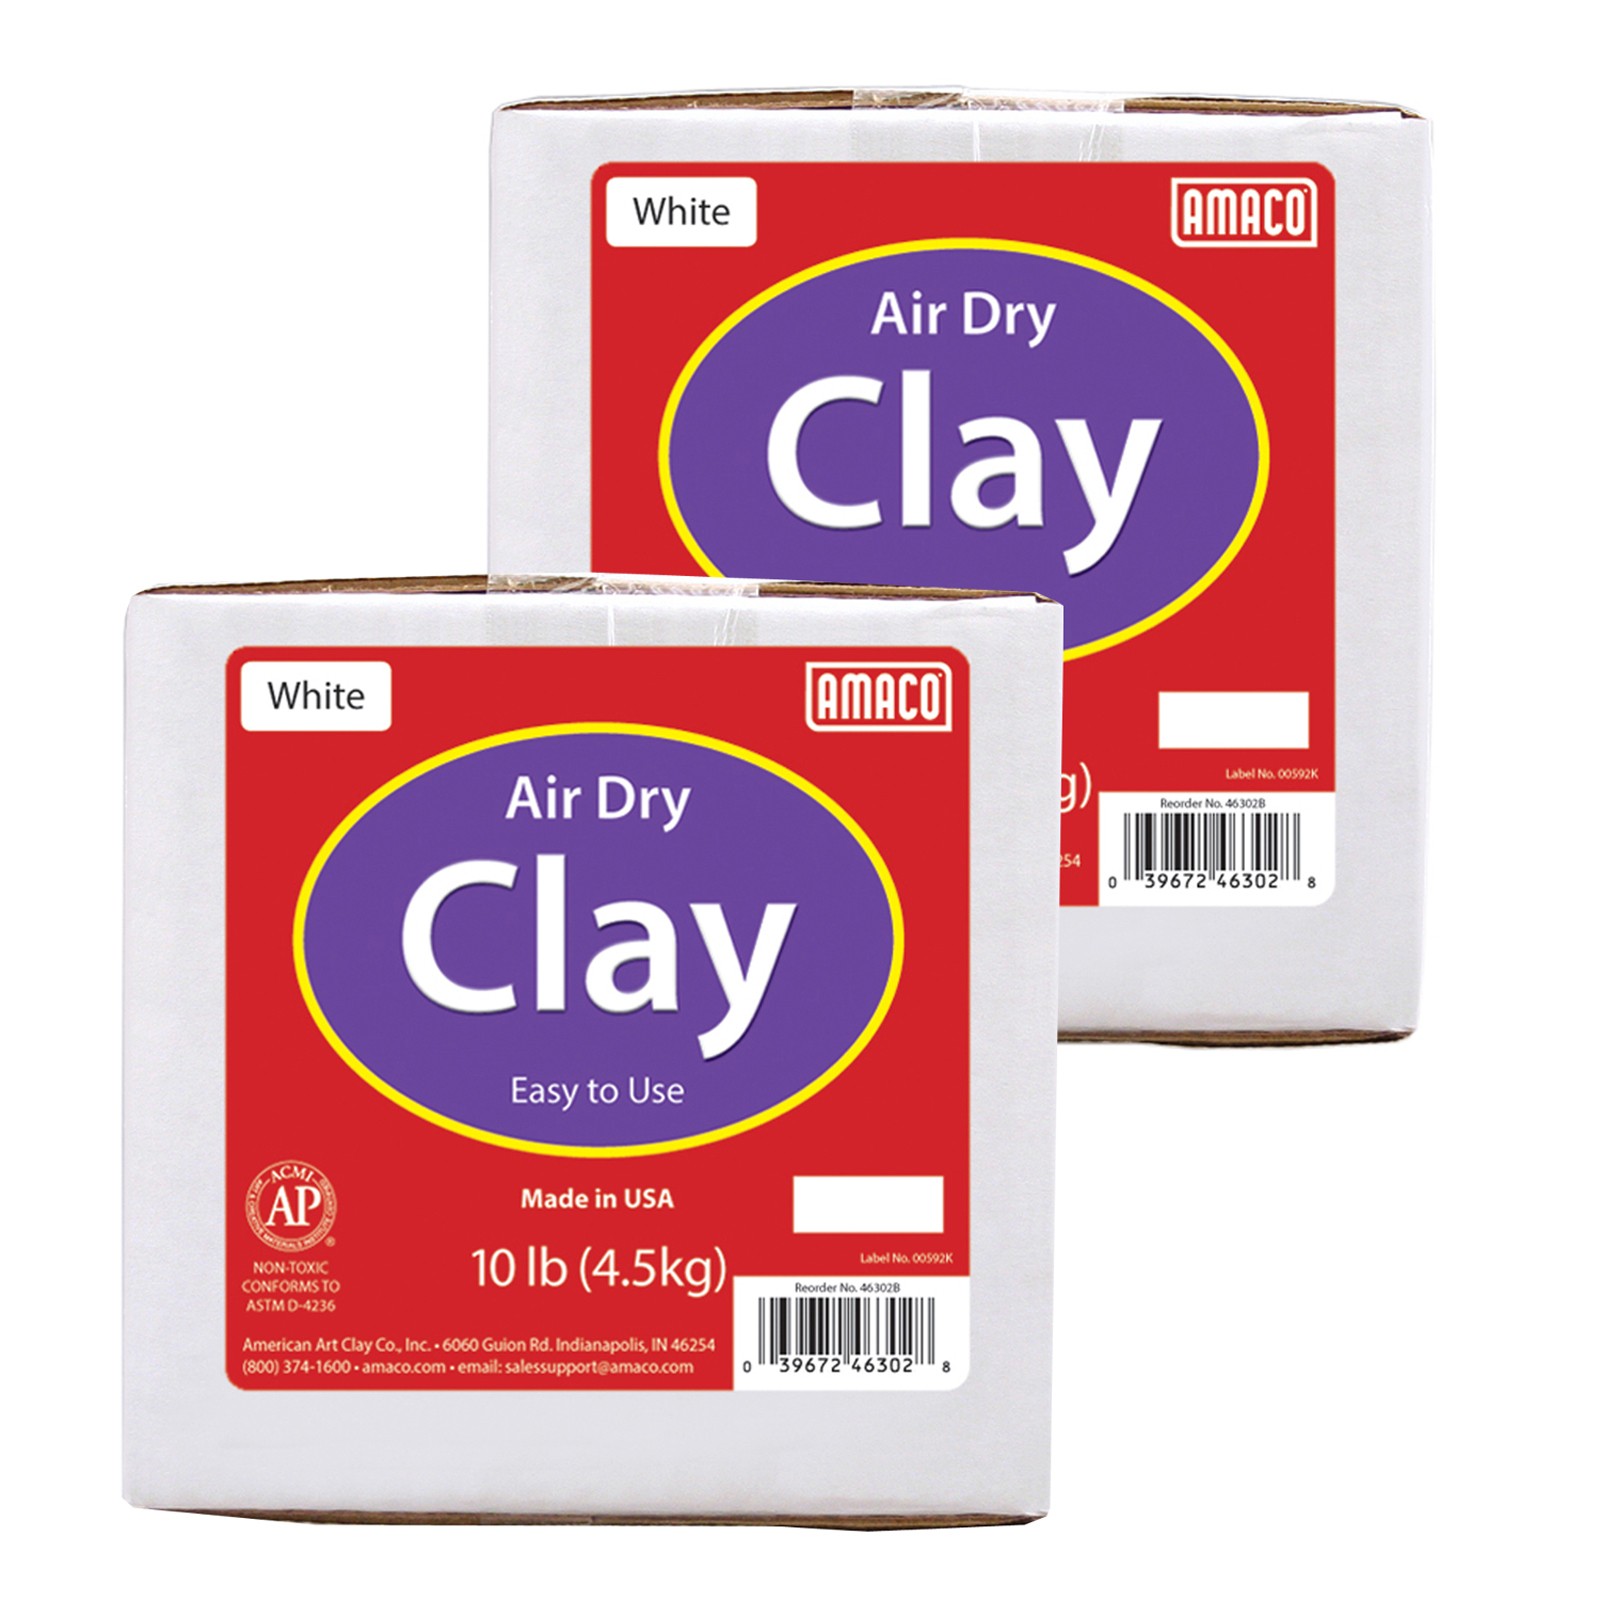 Air Dry Clay, White, 10 lbs. Per Box, 2 Boxes